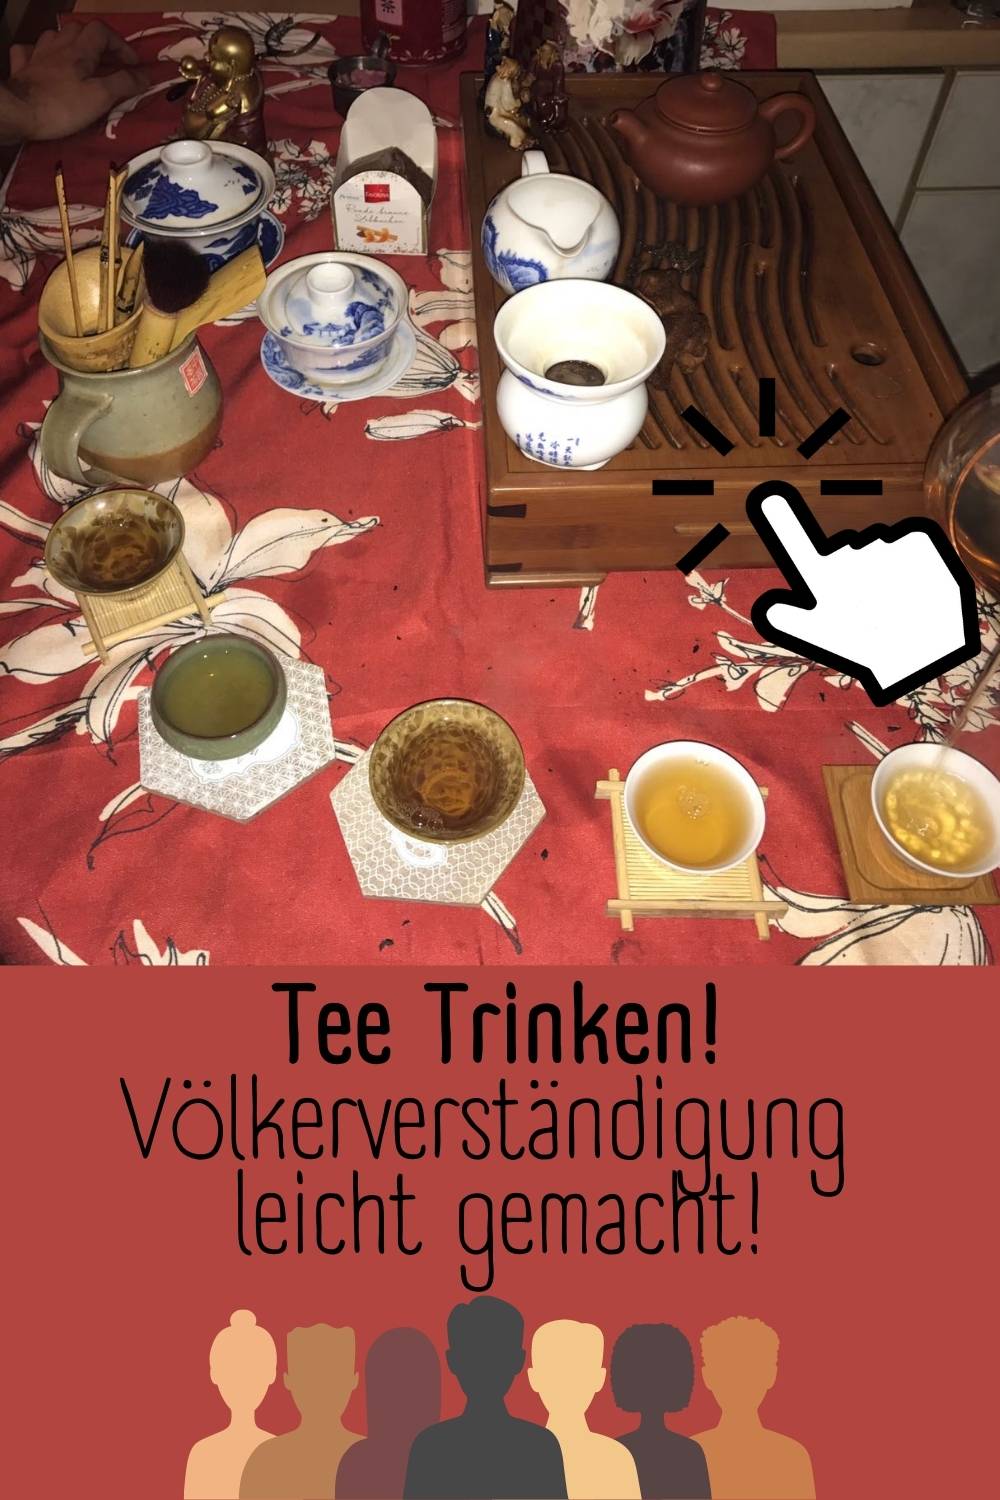 Tee trinken zur Völkerverständigung und interkulturellen Verständigung